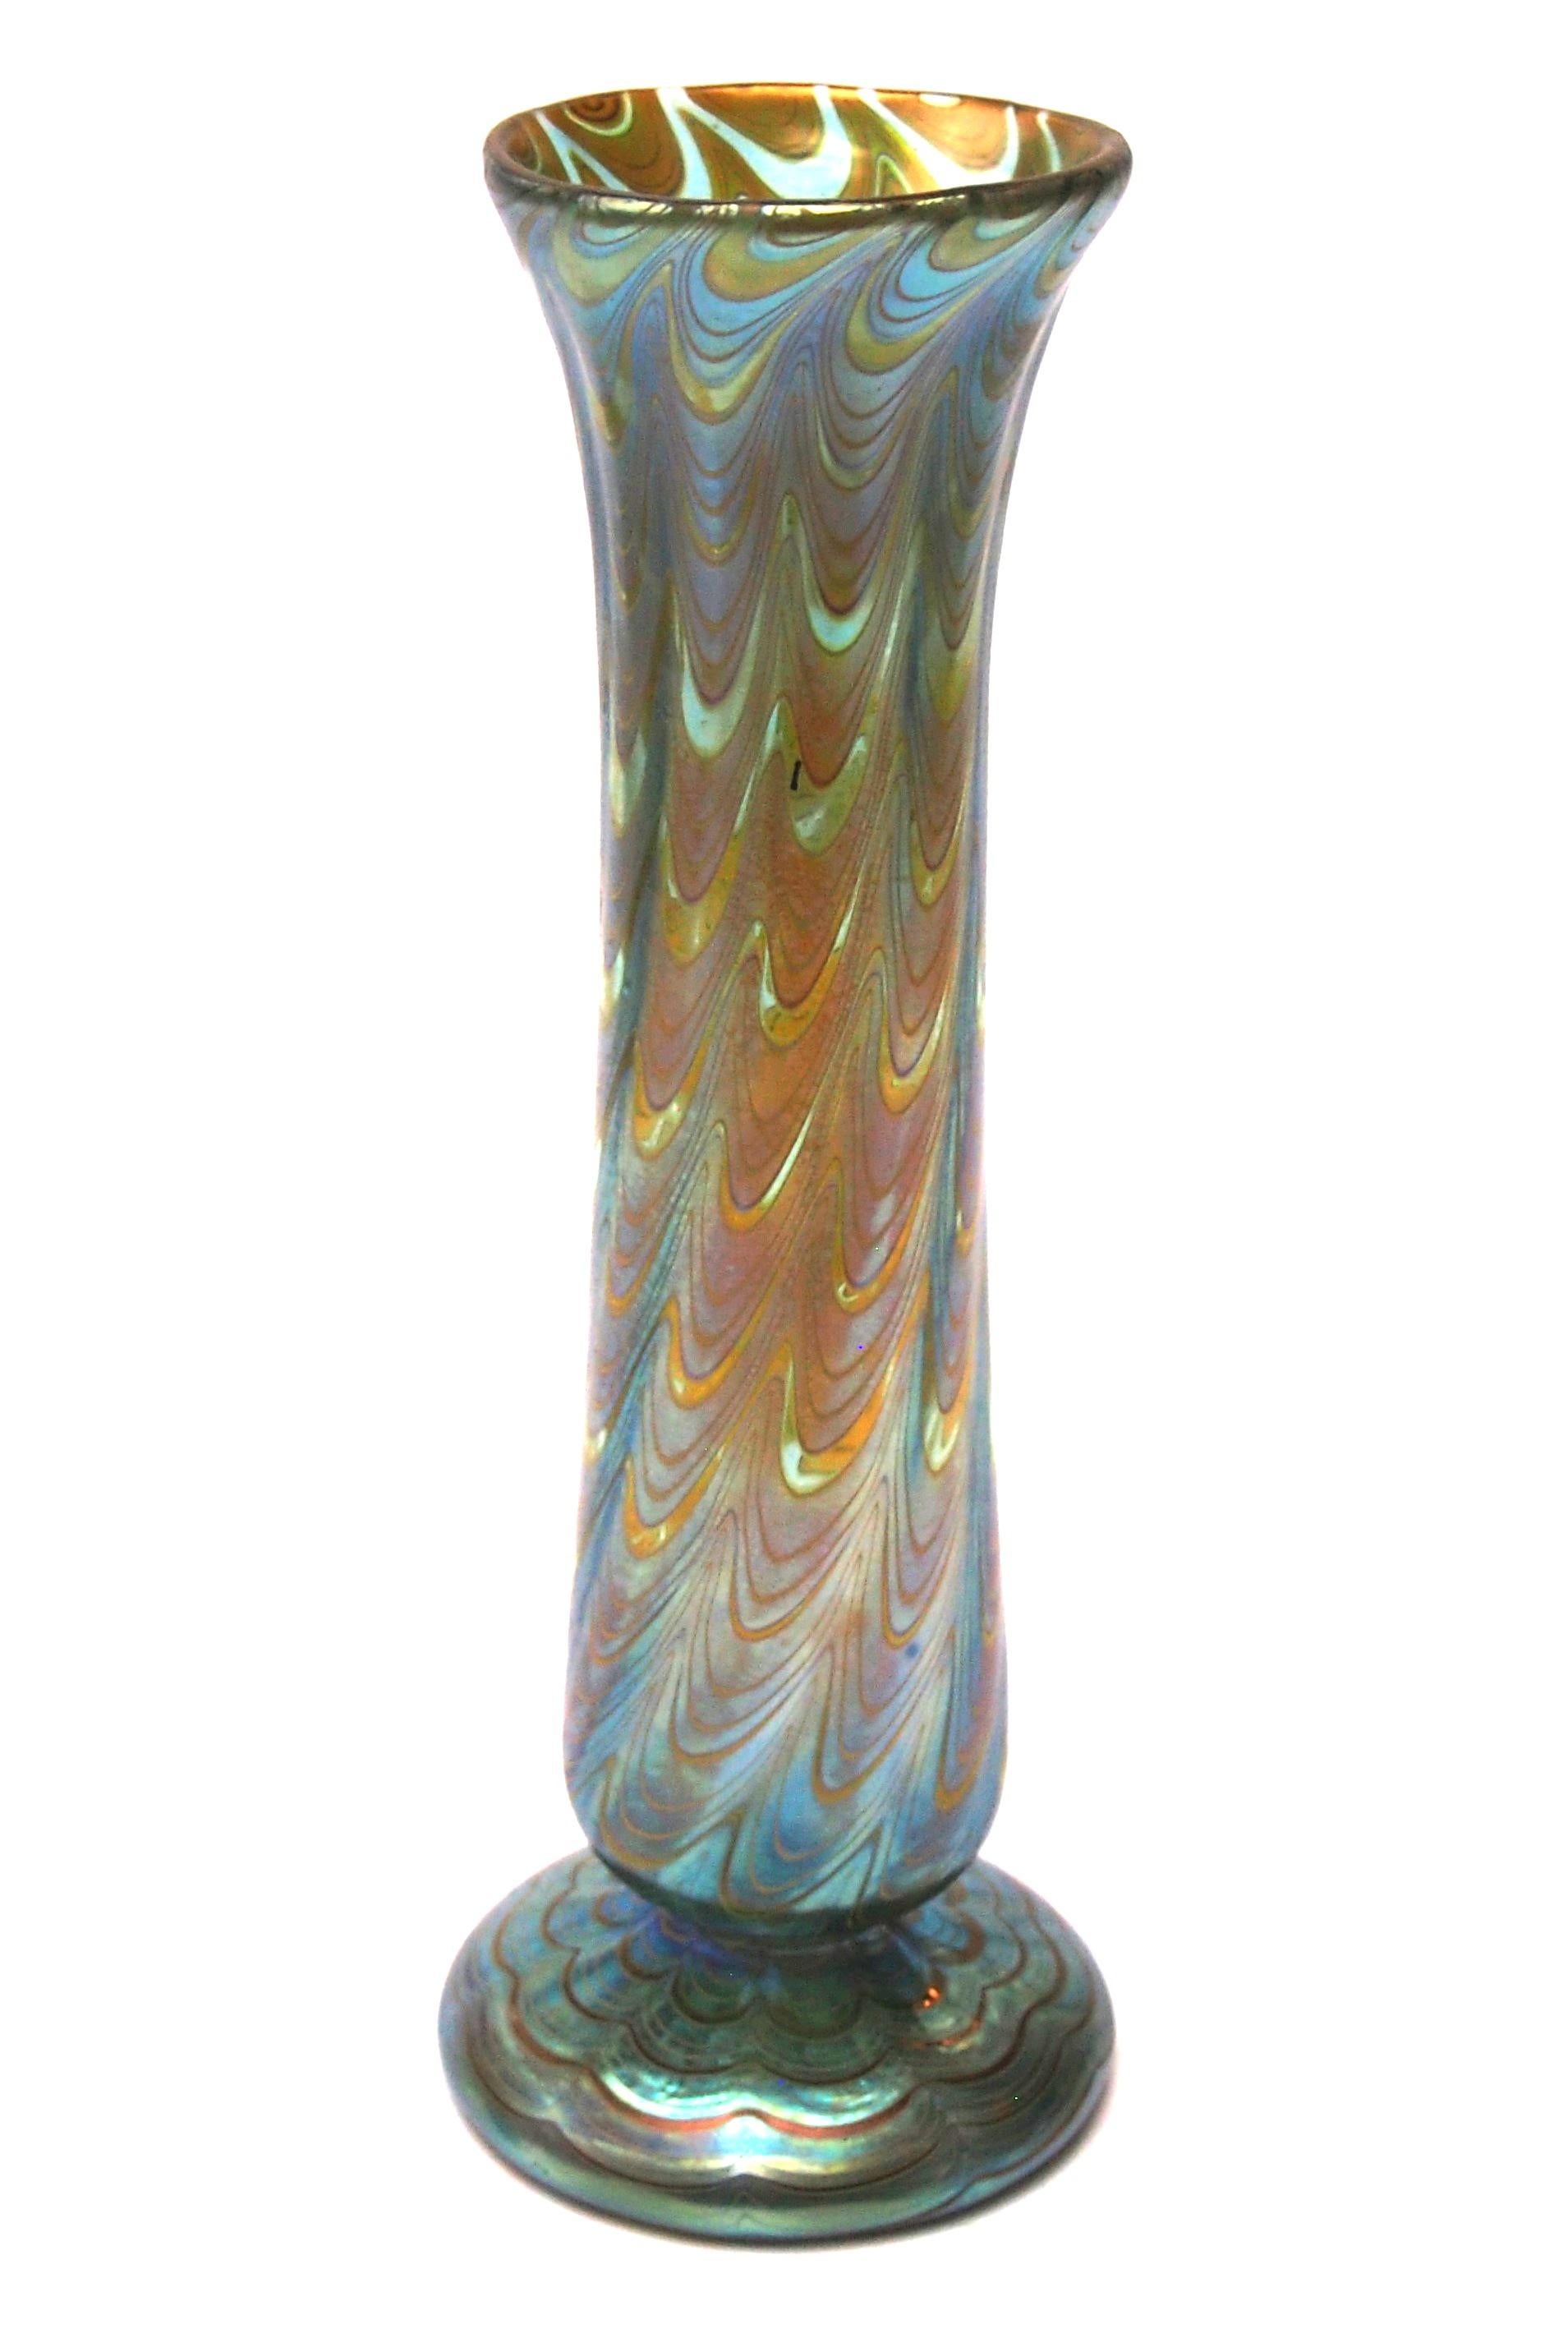 Eine atemberaubende und vollständig dokumentierte Loetz Phaenomen Vase. Bei diesem Beispiel handelt es sich um das dokumentierte Phaenomen-Muster PG 6893 und die Färbung heißt Bergblau (Grün auf blauem Grund) - Das Muster PG 6893  hat Fäden, die in